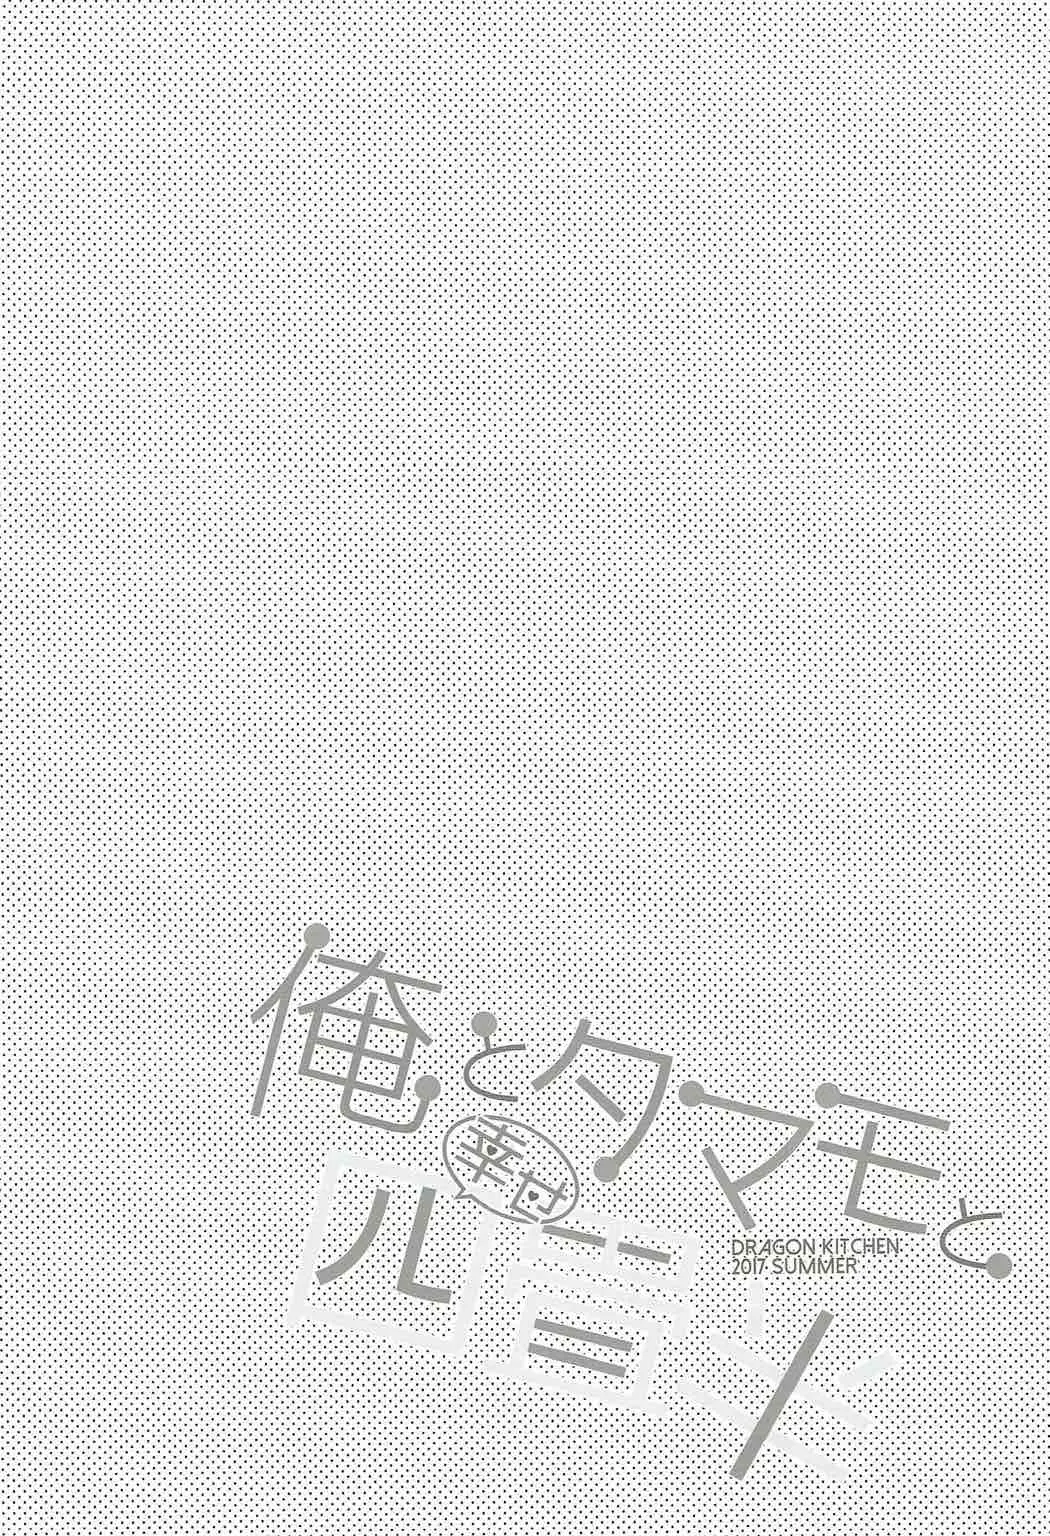 [同人] [Sasorigatame] Ore to Tamamo to Shiawase Yojouhan (Fate Extra) [中文] [P3]